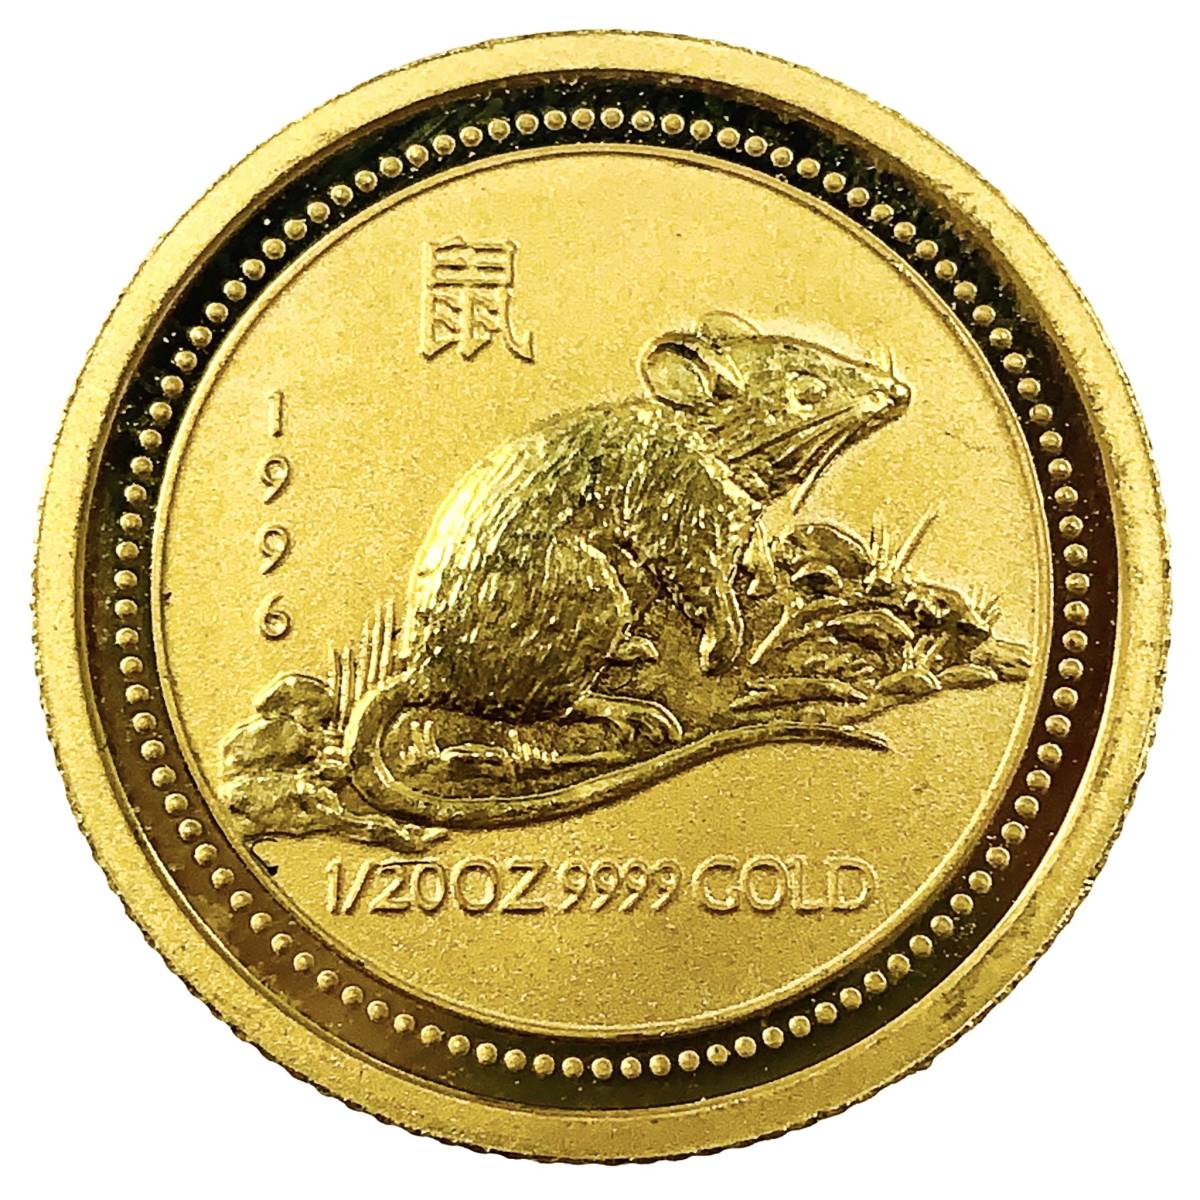 鼠金貨 オーストラリア 1996年 1.5g 1/20オンス 純金コイン 24金 イエローゴールド コレクション Gold